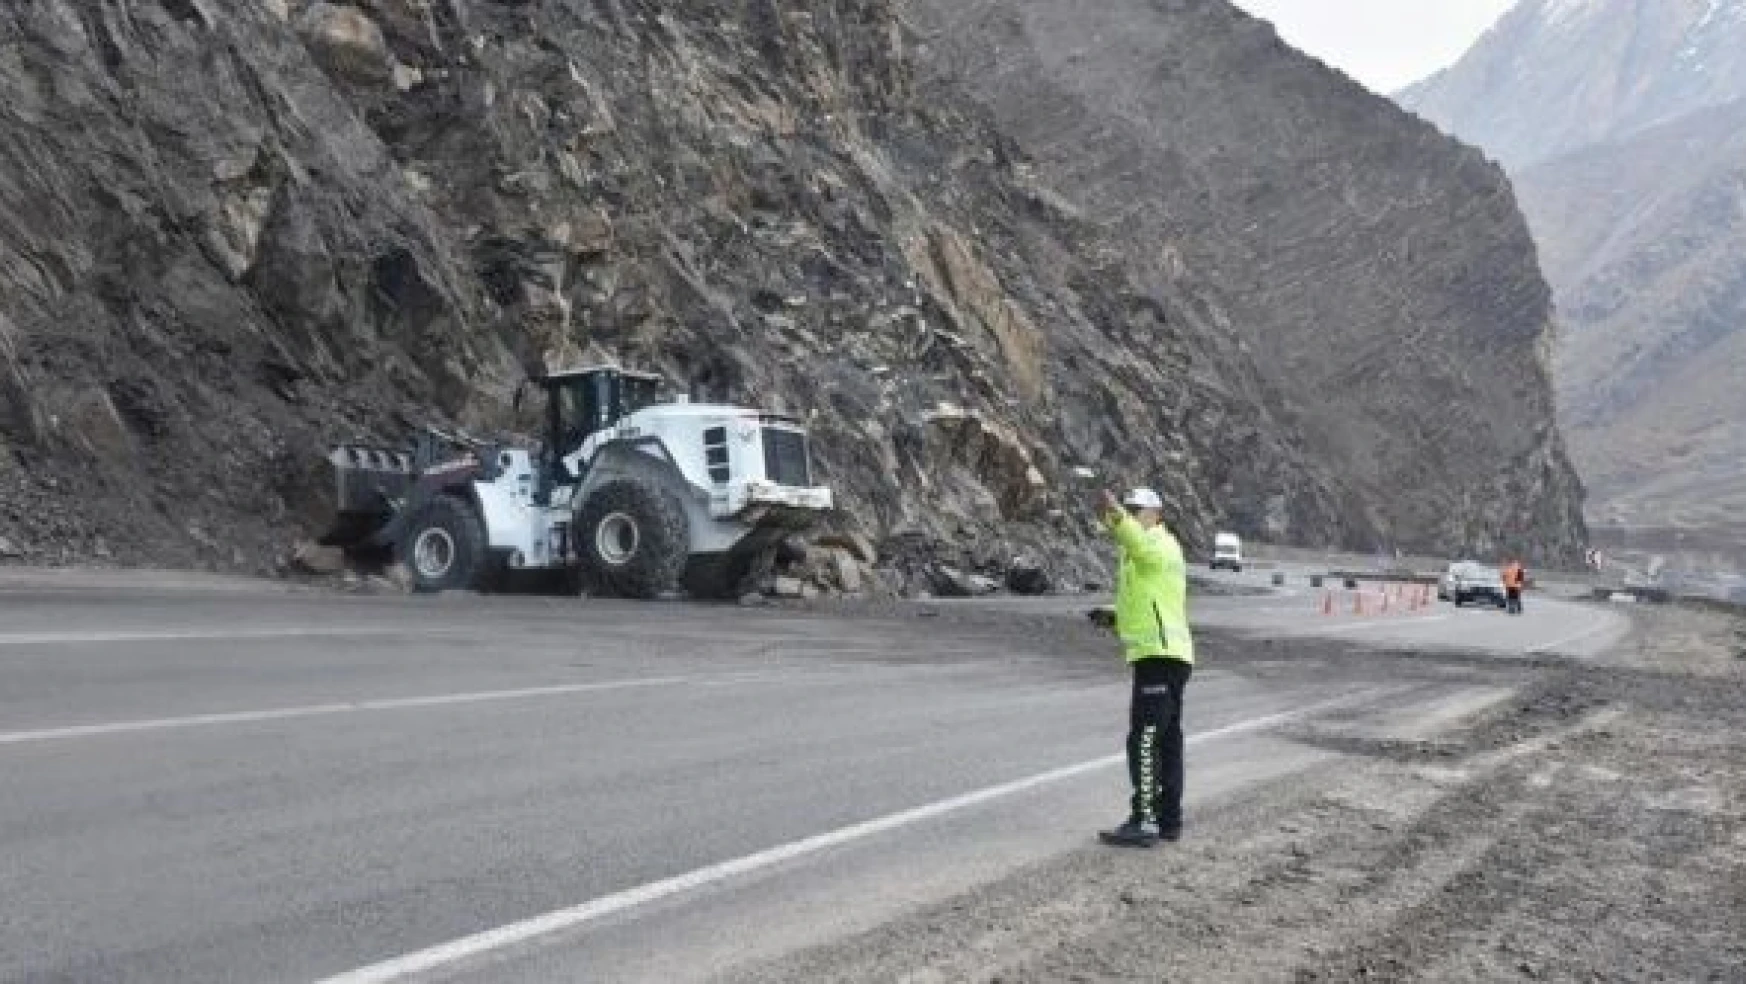 Hakkari'de dağdan kopan kaya parçaları nedeniyle kapatılan kara yolu açıldı